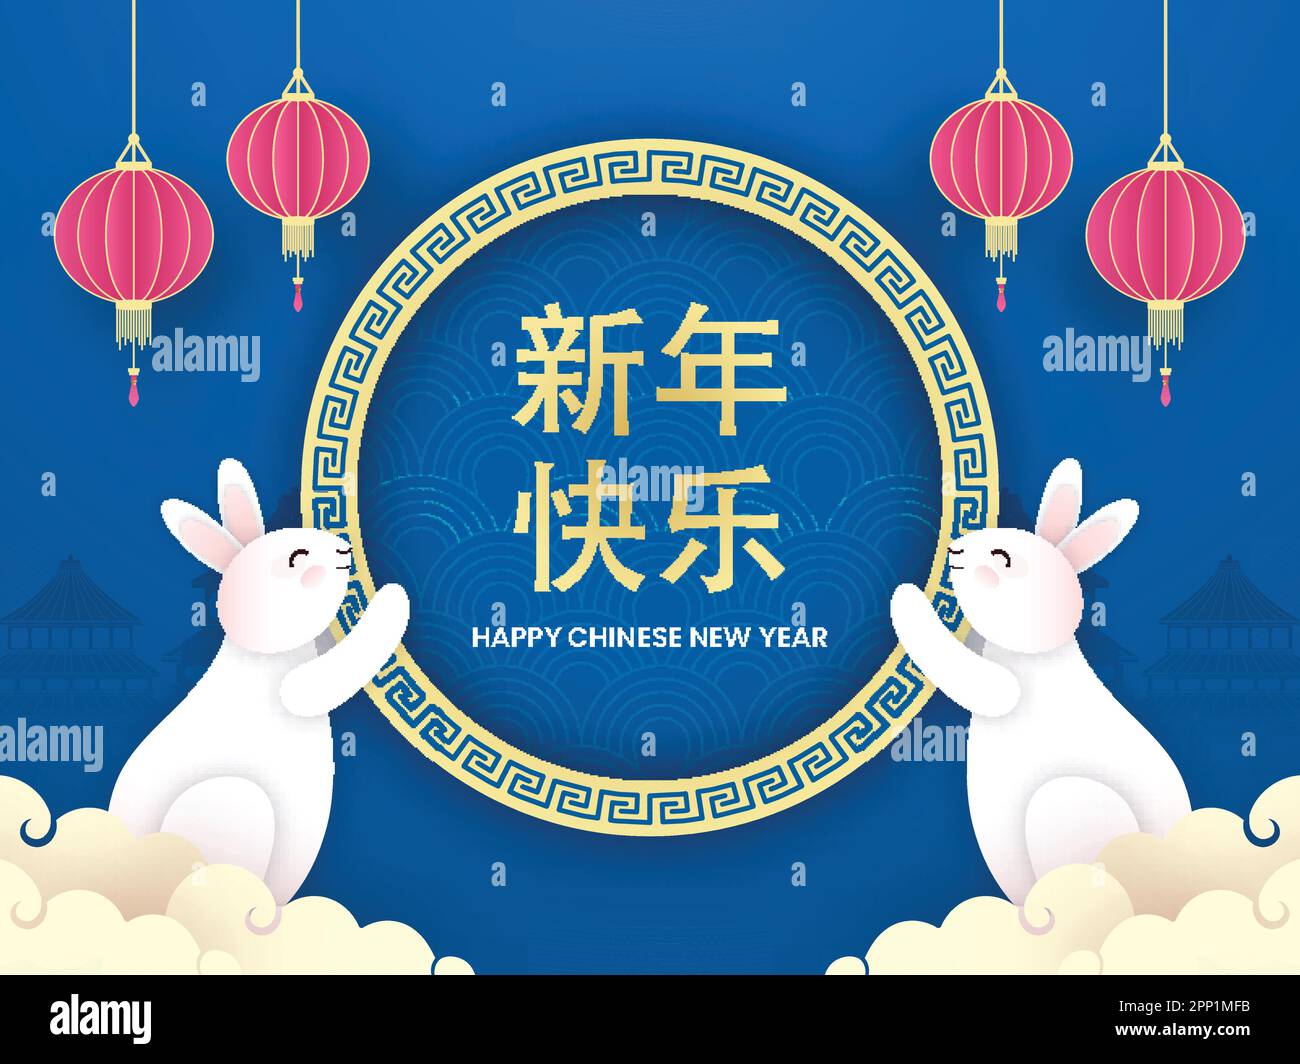 Golden Happy Chinese New Year Mandarin testo in cornice circolare con Bunnies cartoon, Lanterne taglio carta Hang e nuvole decorate su sfondo blu. Illustrazione Vettoriale